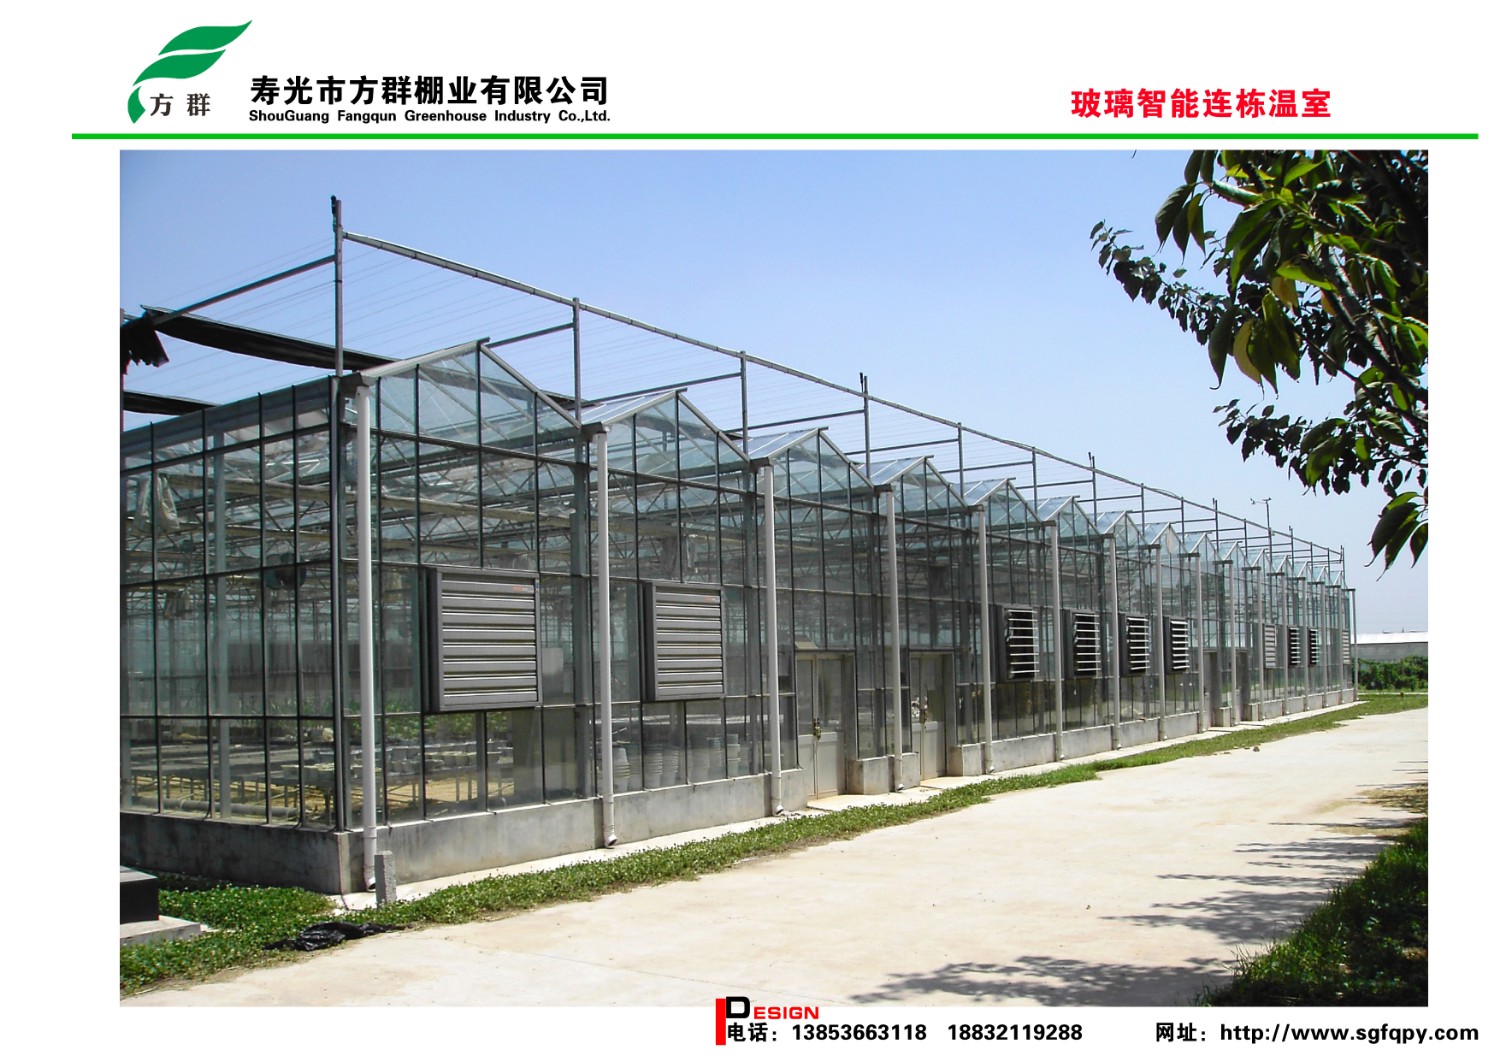 安徽绿蒂农业玻璃智能温室项目